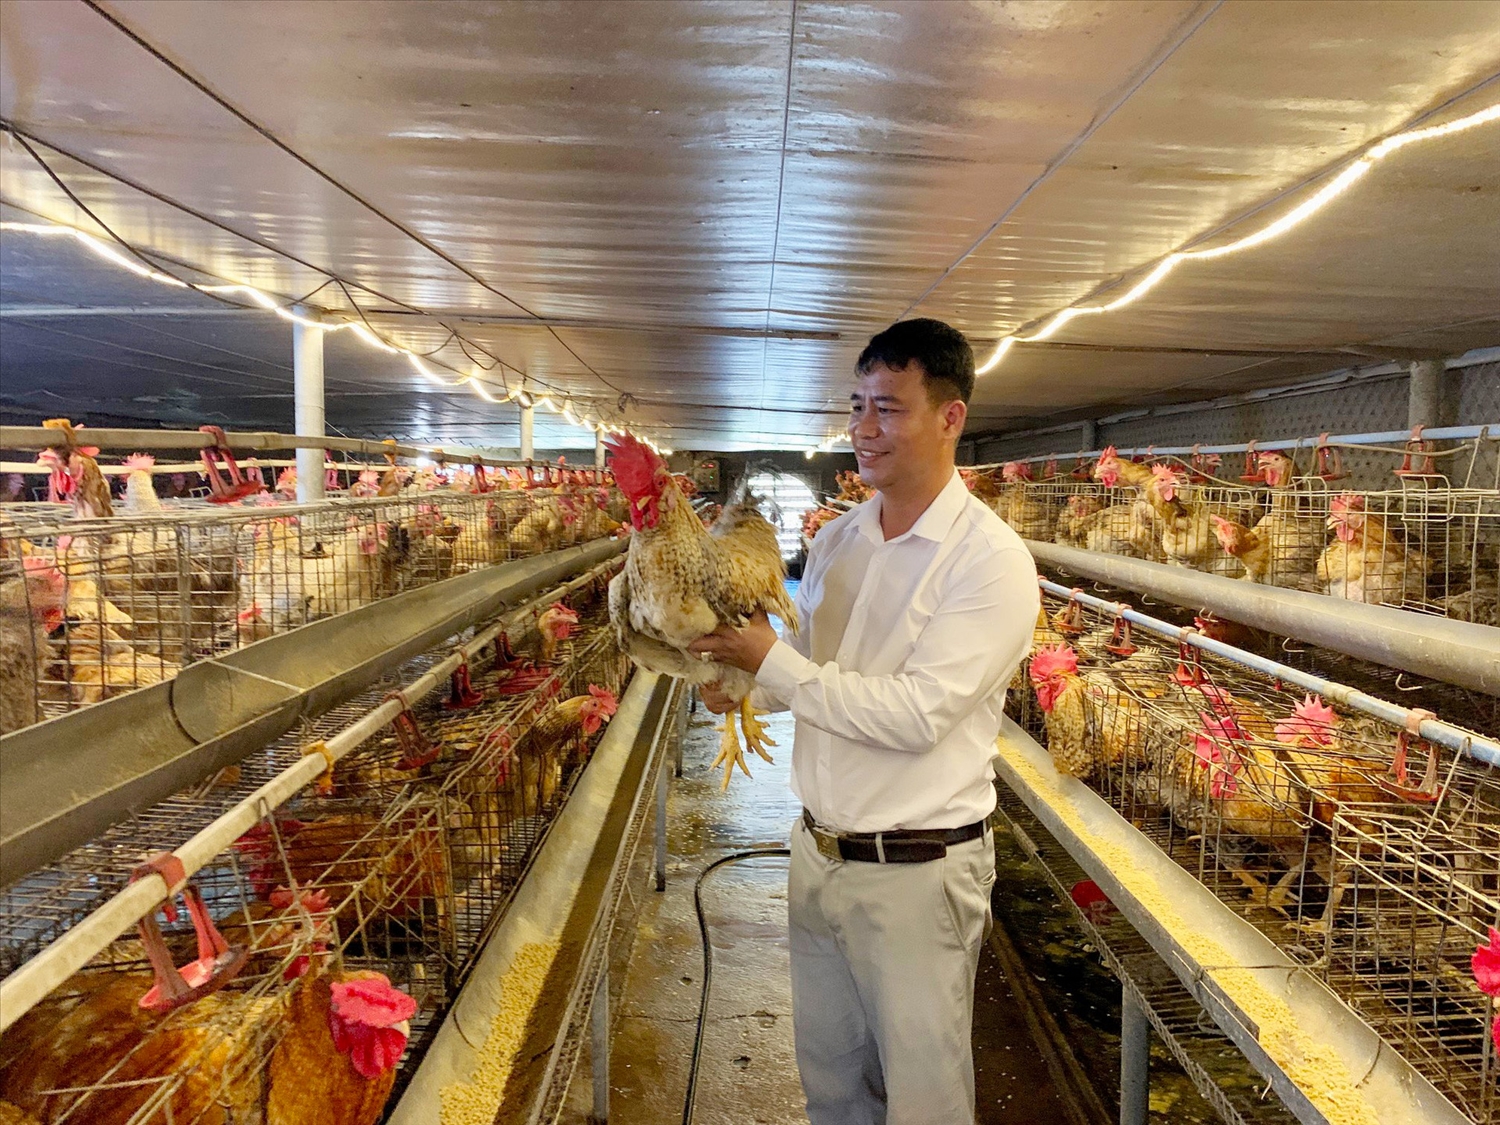 HTX nông nghiệp Tuyền Hiền đã liên kết với hơn 100 hộ chăn nuôi gà ở địa phương theo hướng sản xuất tập trung, giúp nhiều gia đình thoát nghèo vươn lên làm giàu